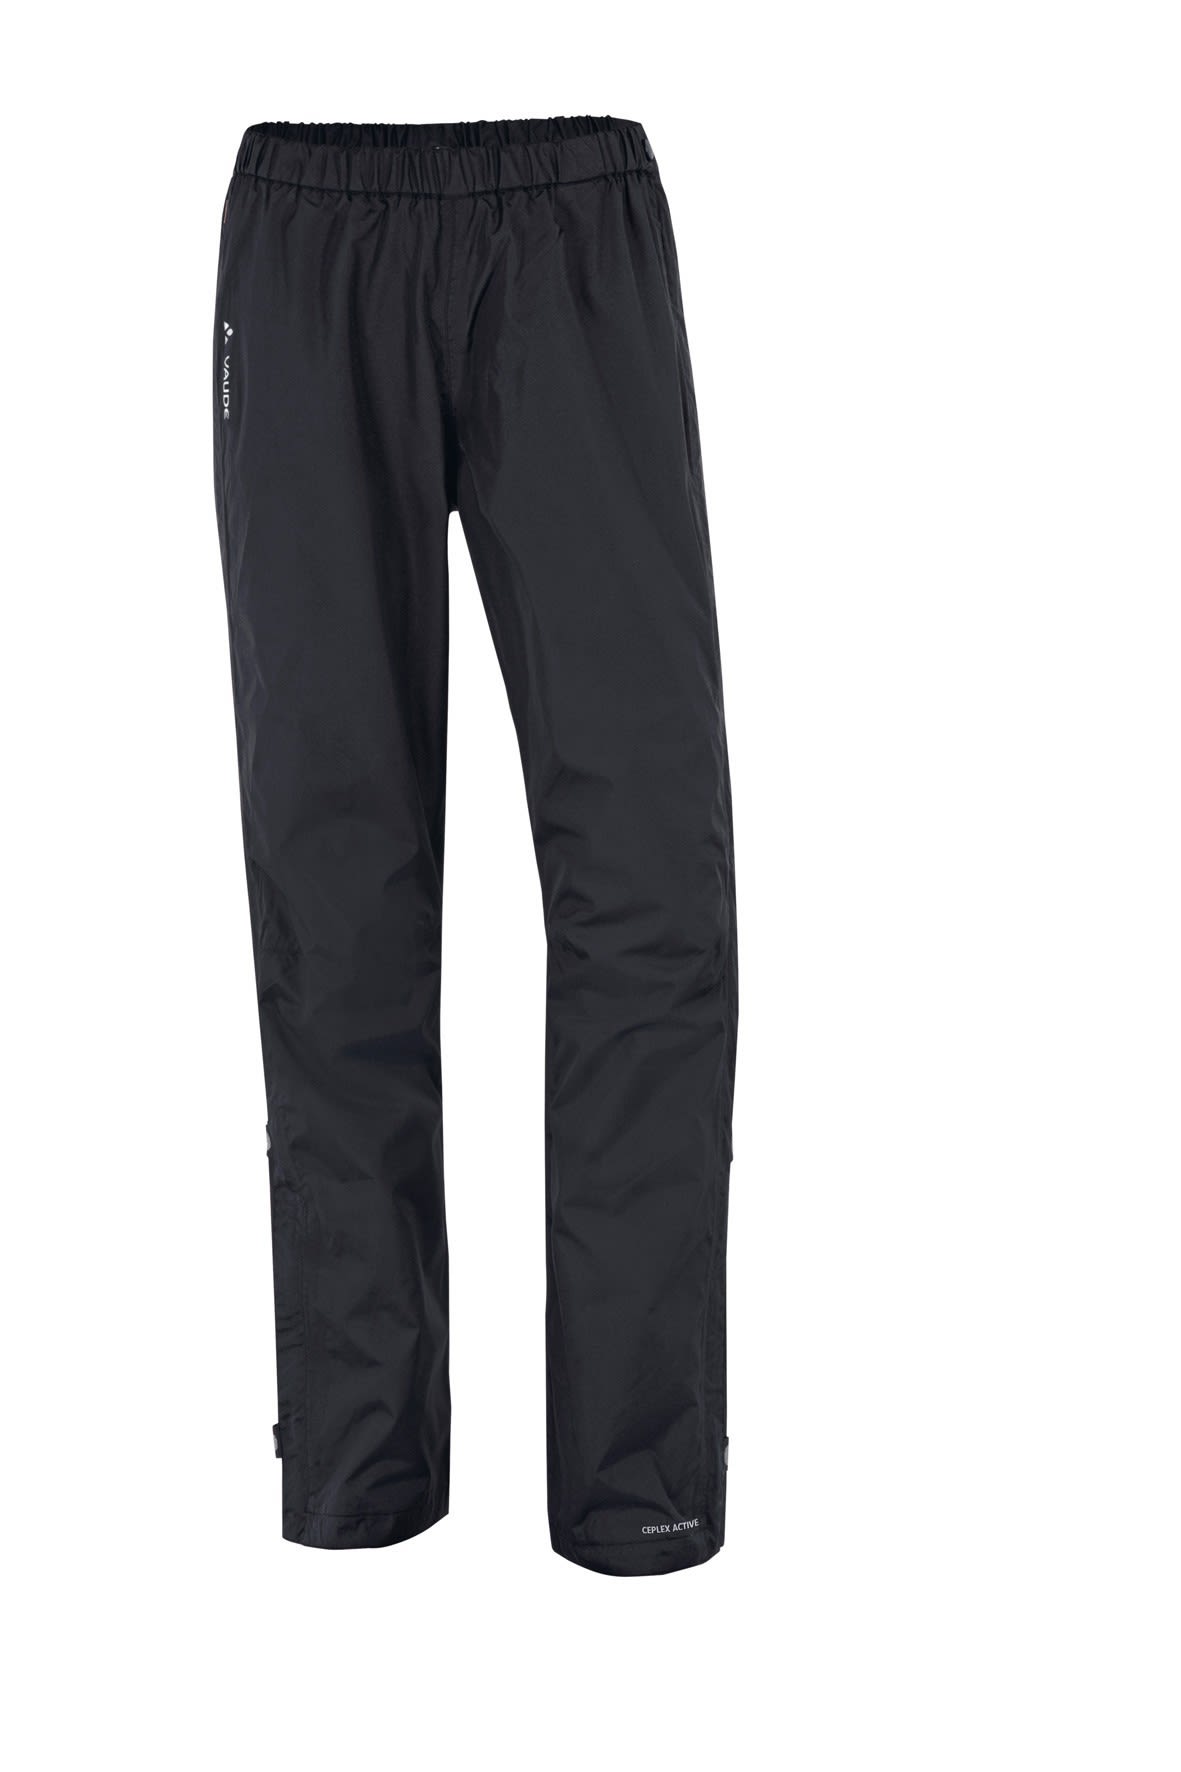 Vaude Fluid Full-Zip Pants Schwarz- Female Hosen- Grsse 38 - Farbe Black unter Vaude